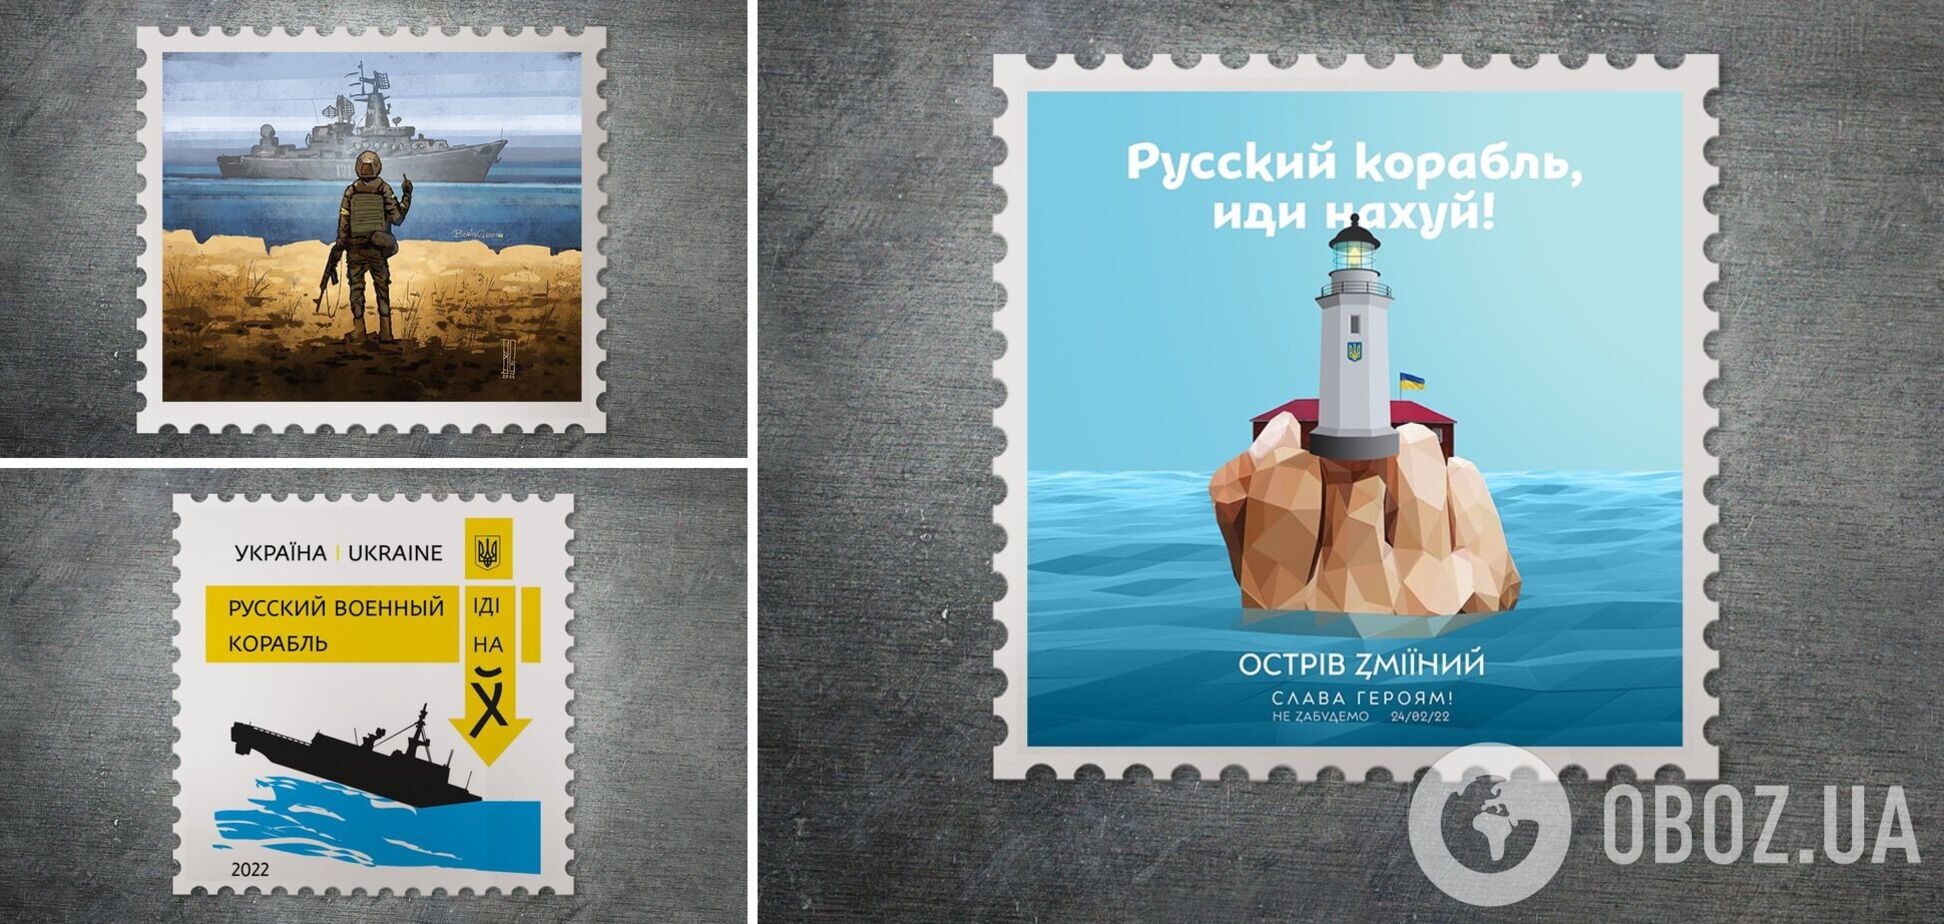 Укрпошта опублікувала ескізи поштових марок на тему 'Русский военный корабль, иди на*уй'. Фото